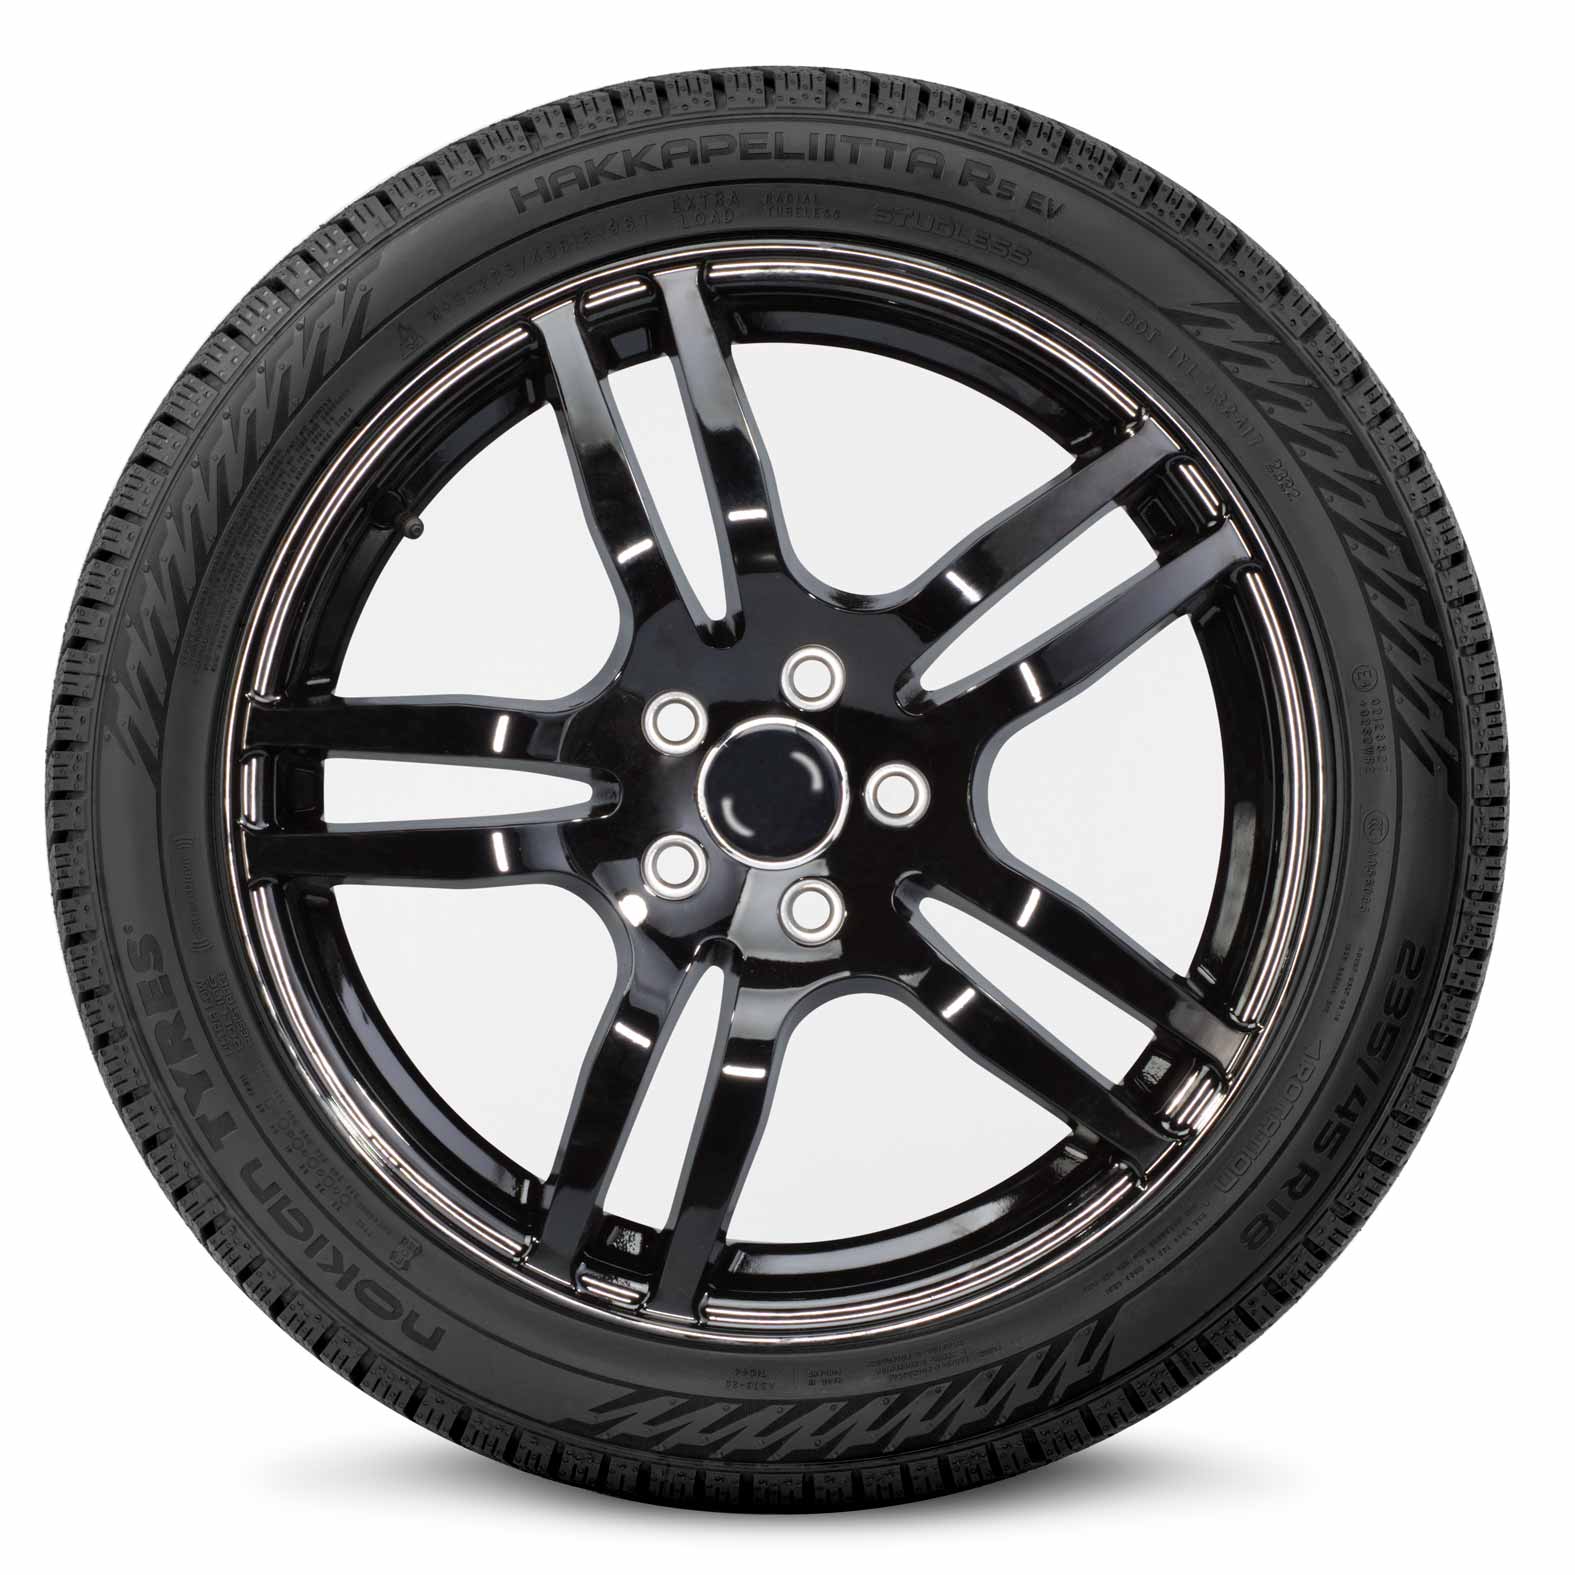 Nokian Hakkapeliitta Winter R5 Tire EV | for Kal Tire